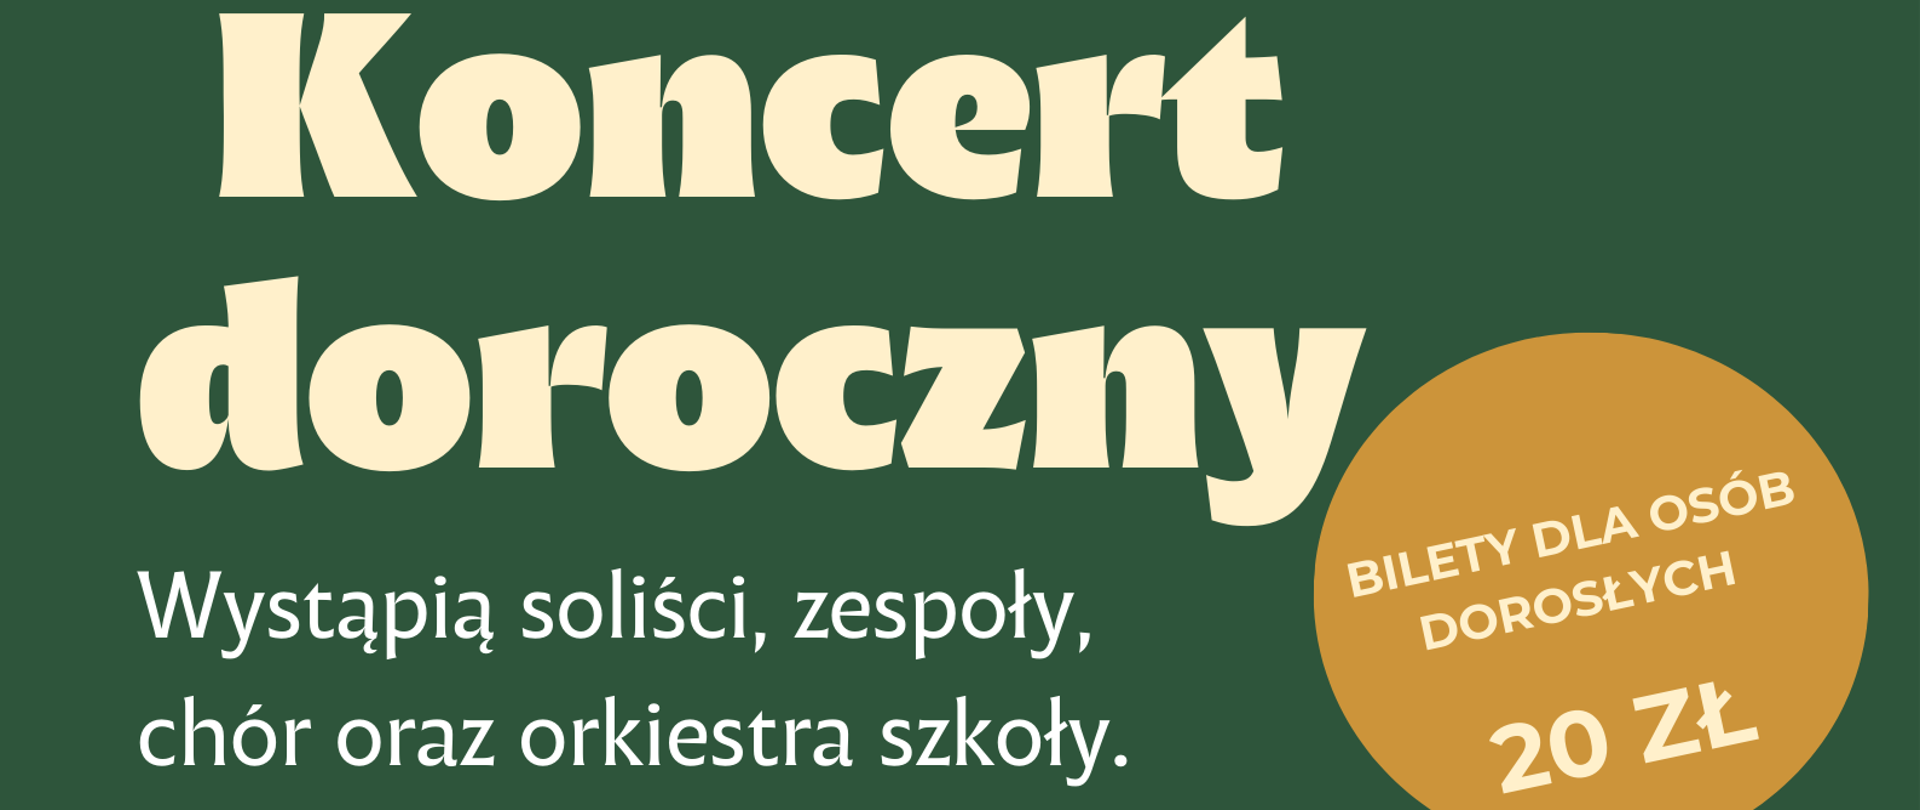 Plakat przedstawiający informacje dotyczące I Koncertu Dorocznego